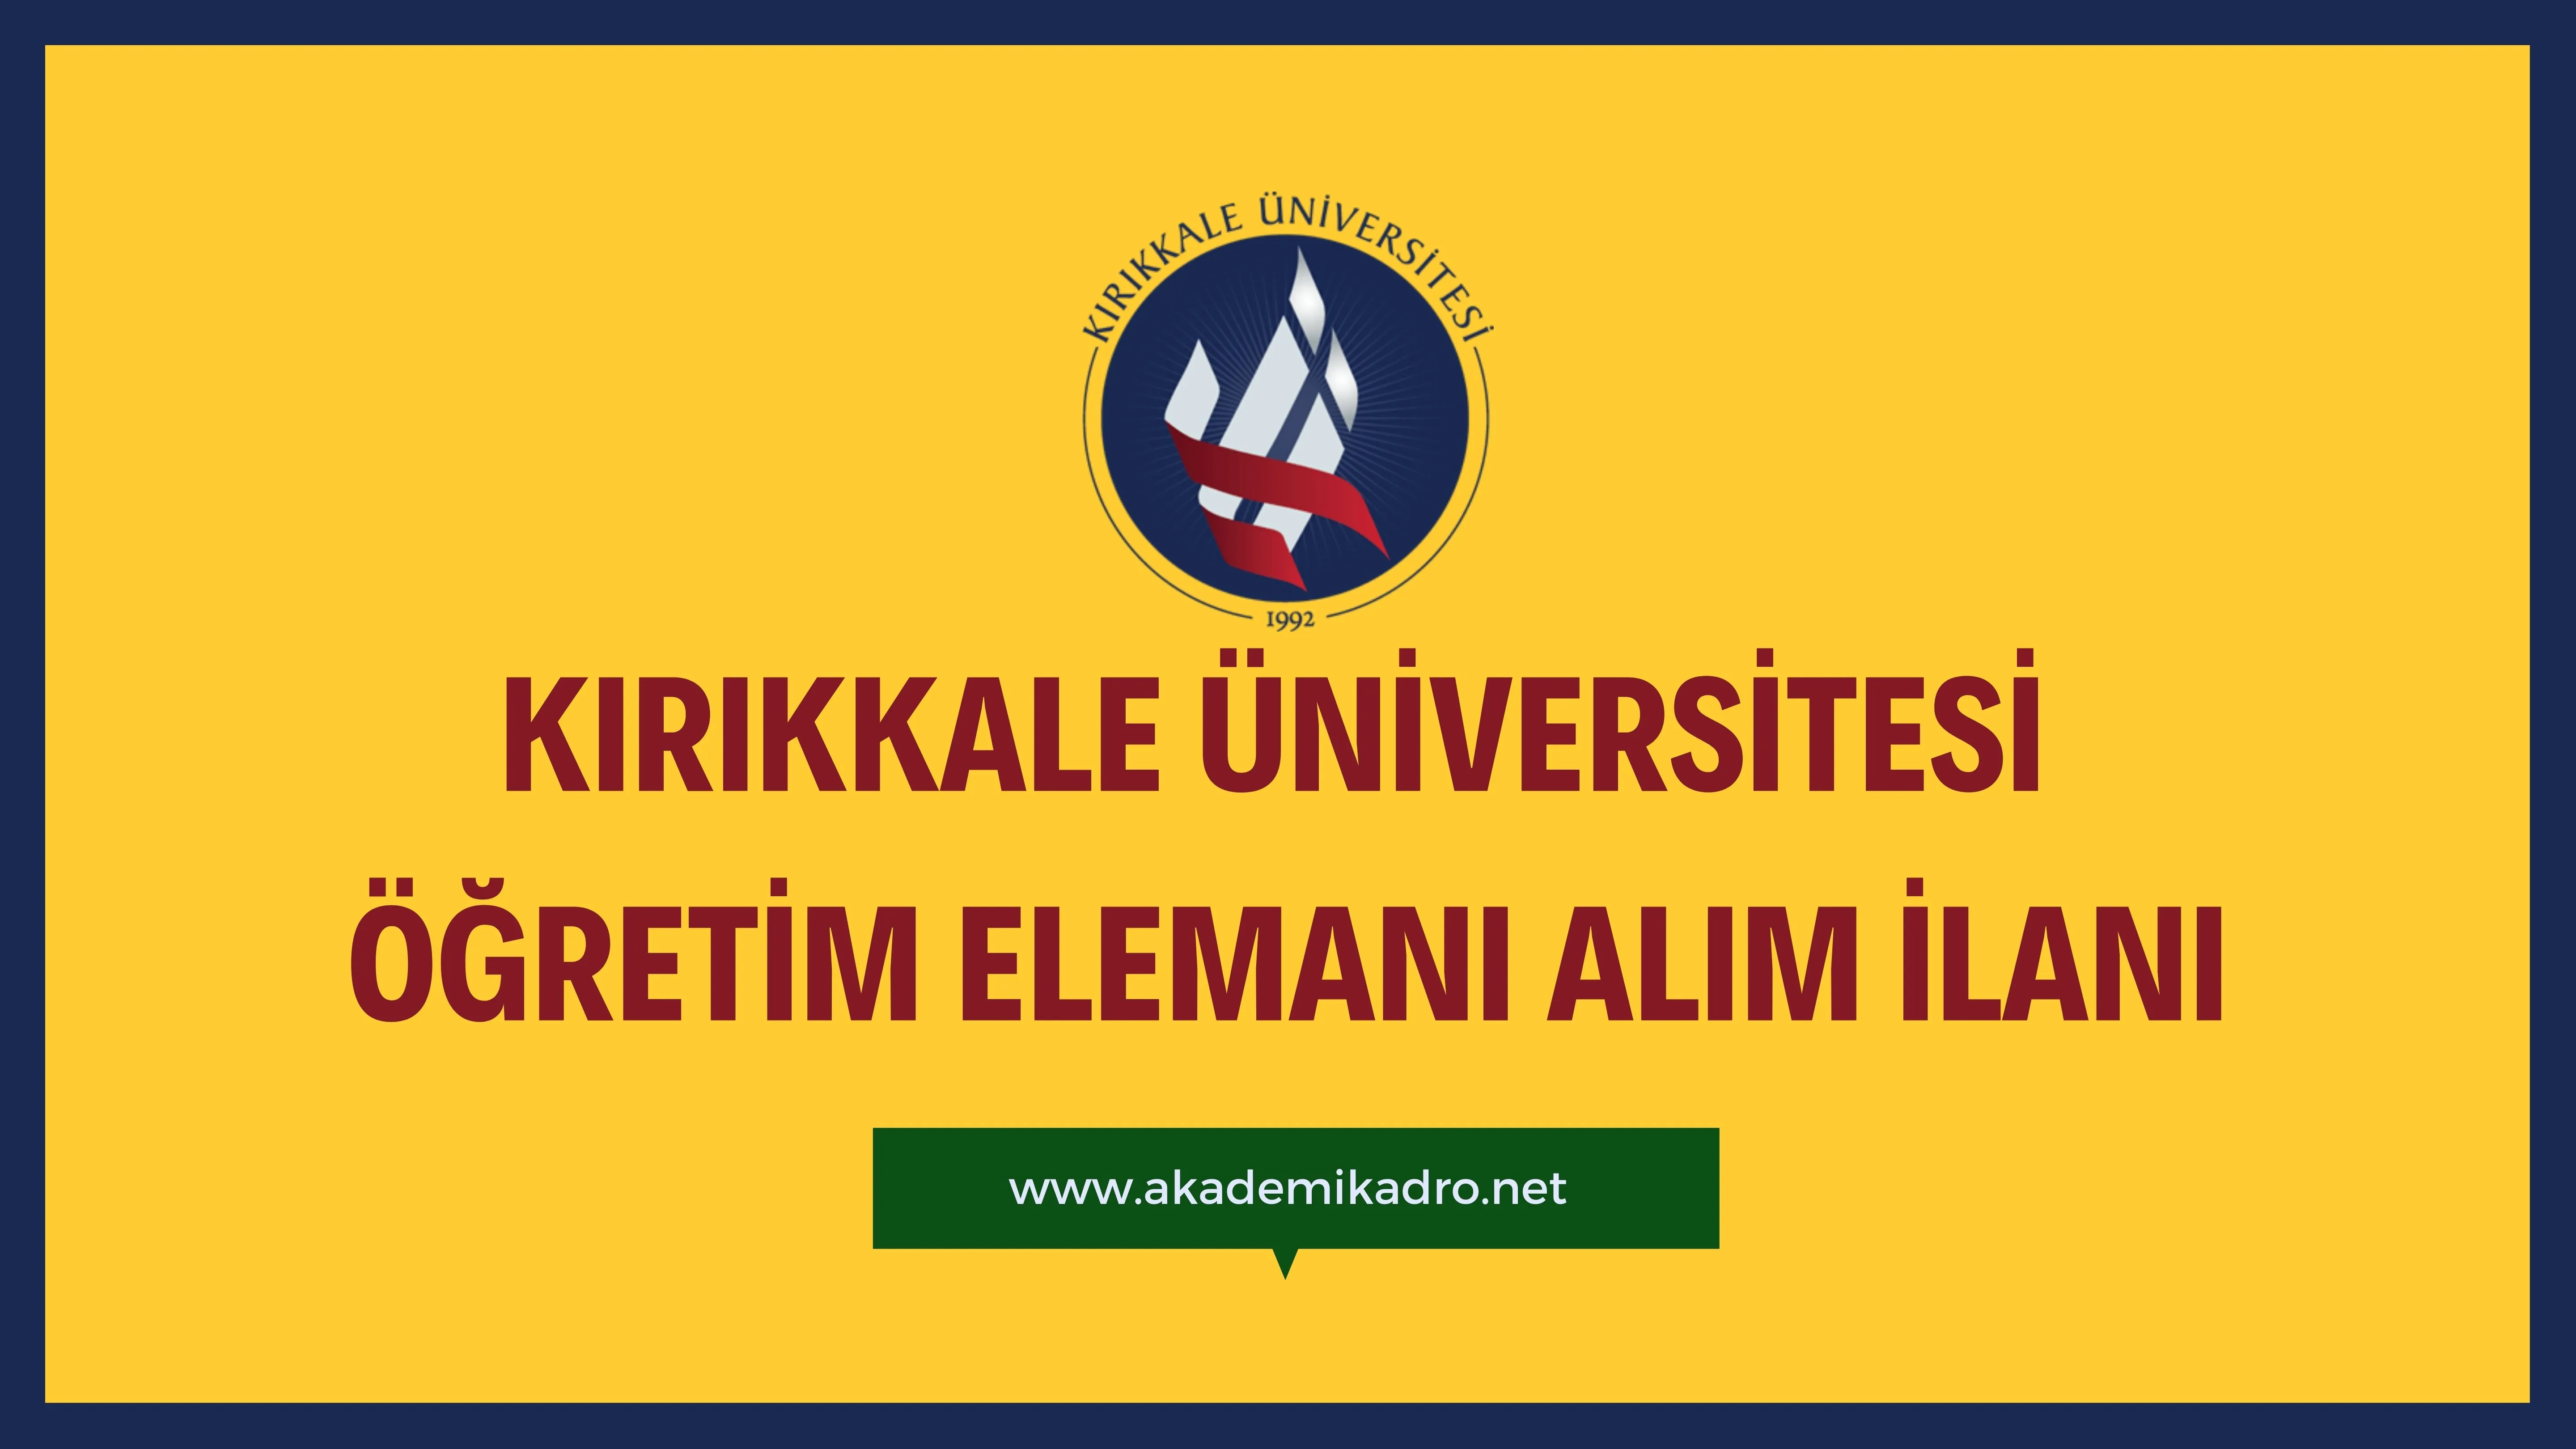 Kırıkkale Üniversitesi 5 Öğretim görevlisi ve birçok alandan 32 Öğretim üyesi alacak.